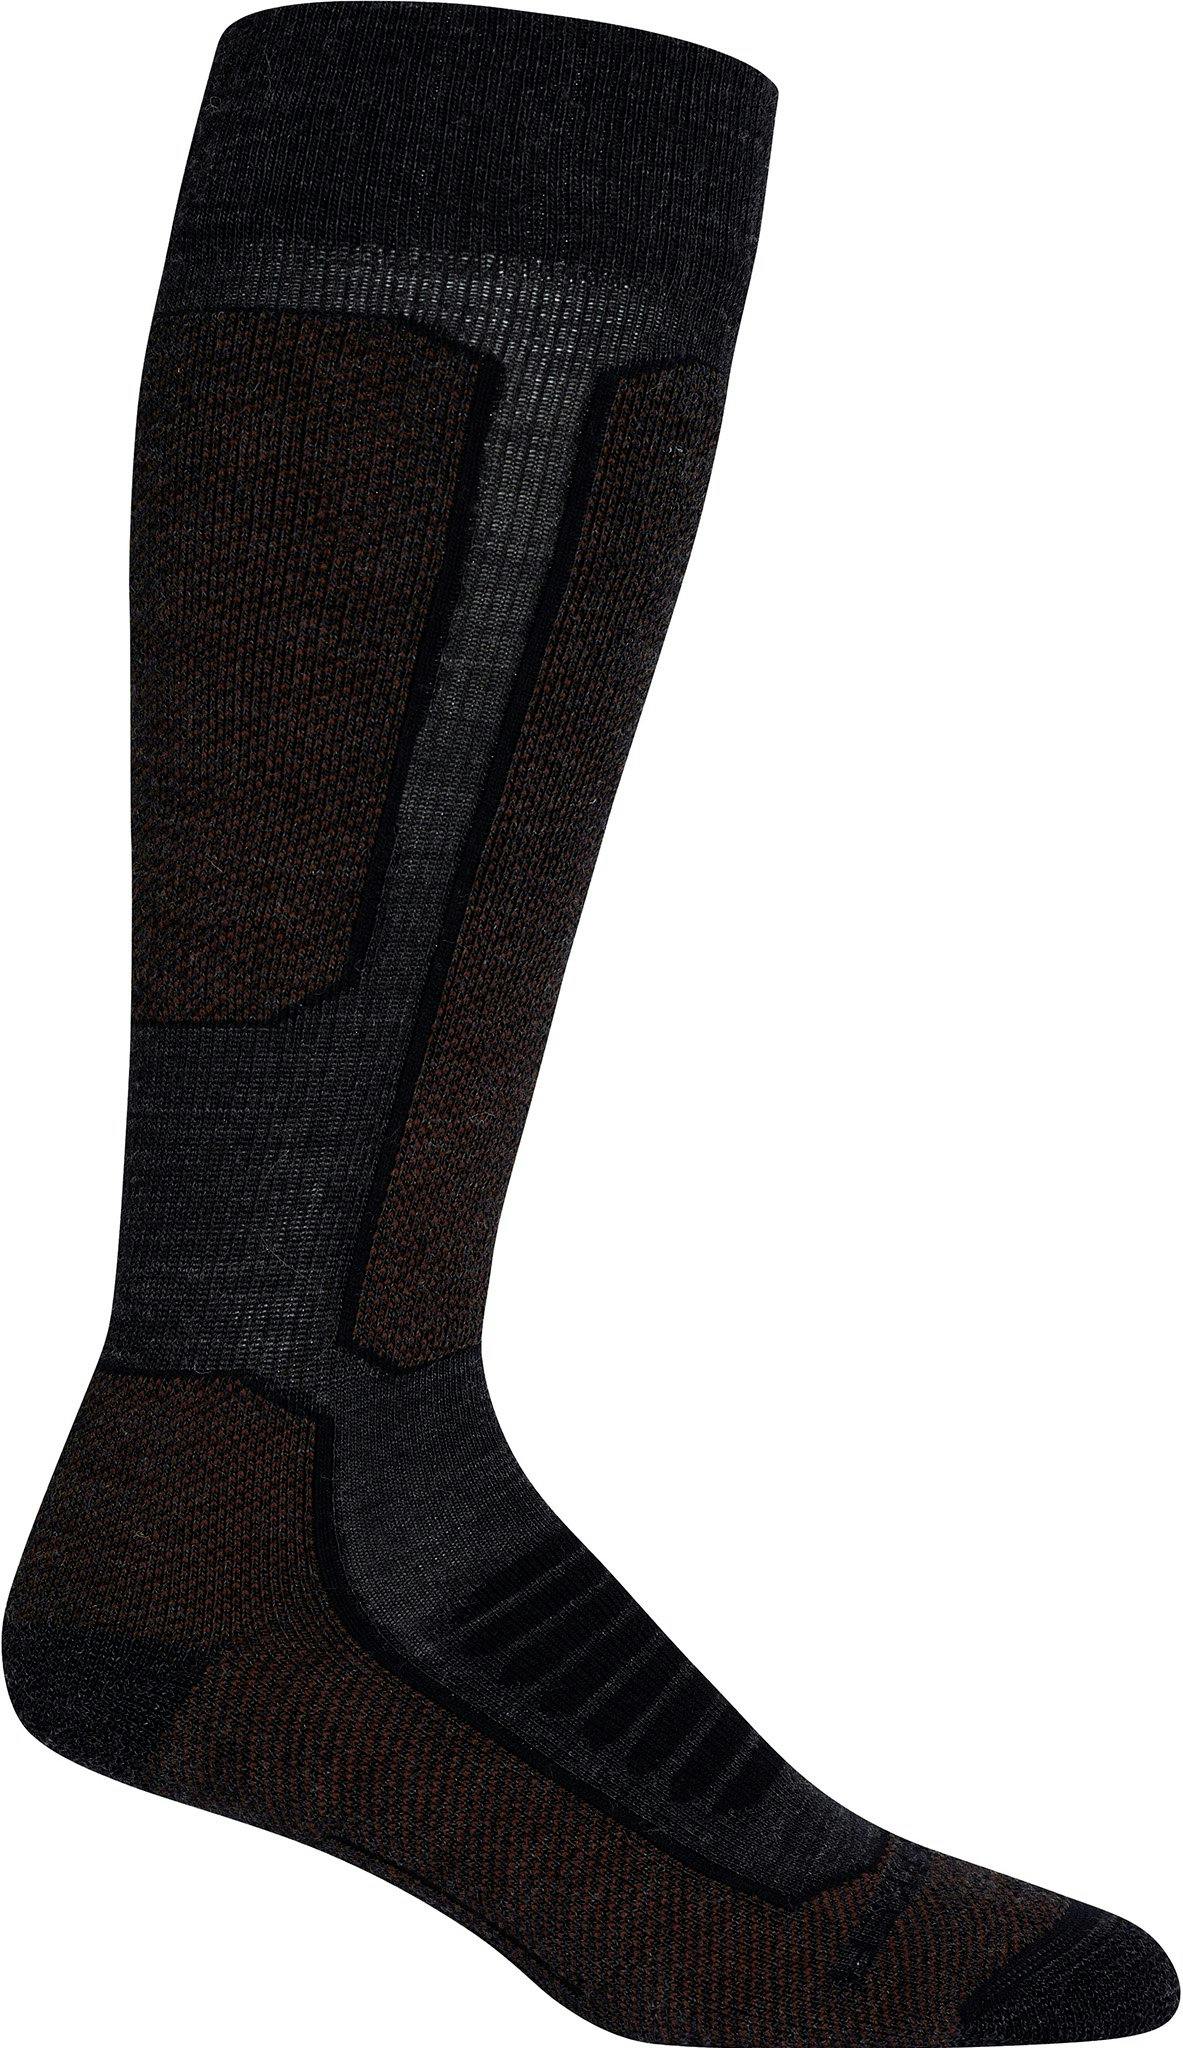 Product image for Ski+ Medium OTC Socks - Women's